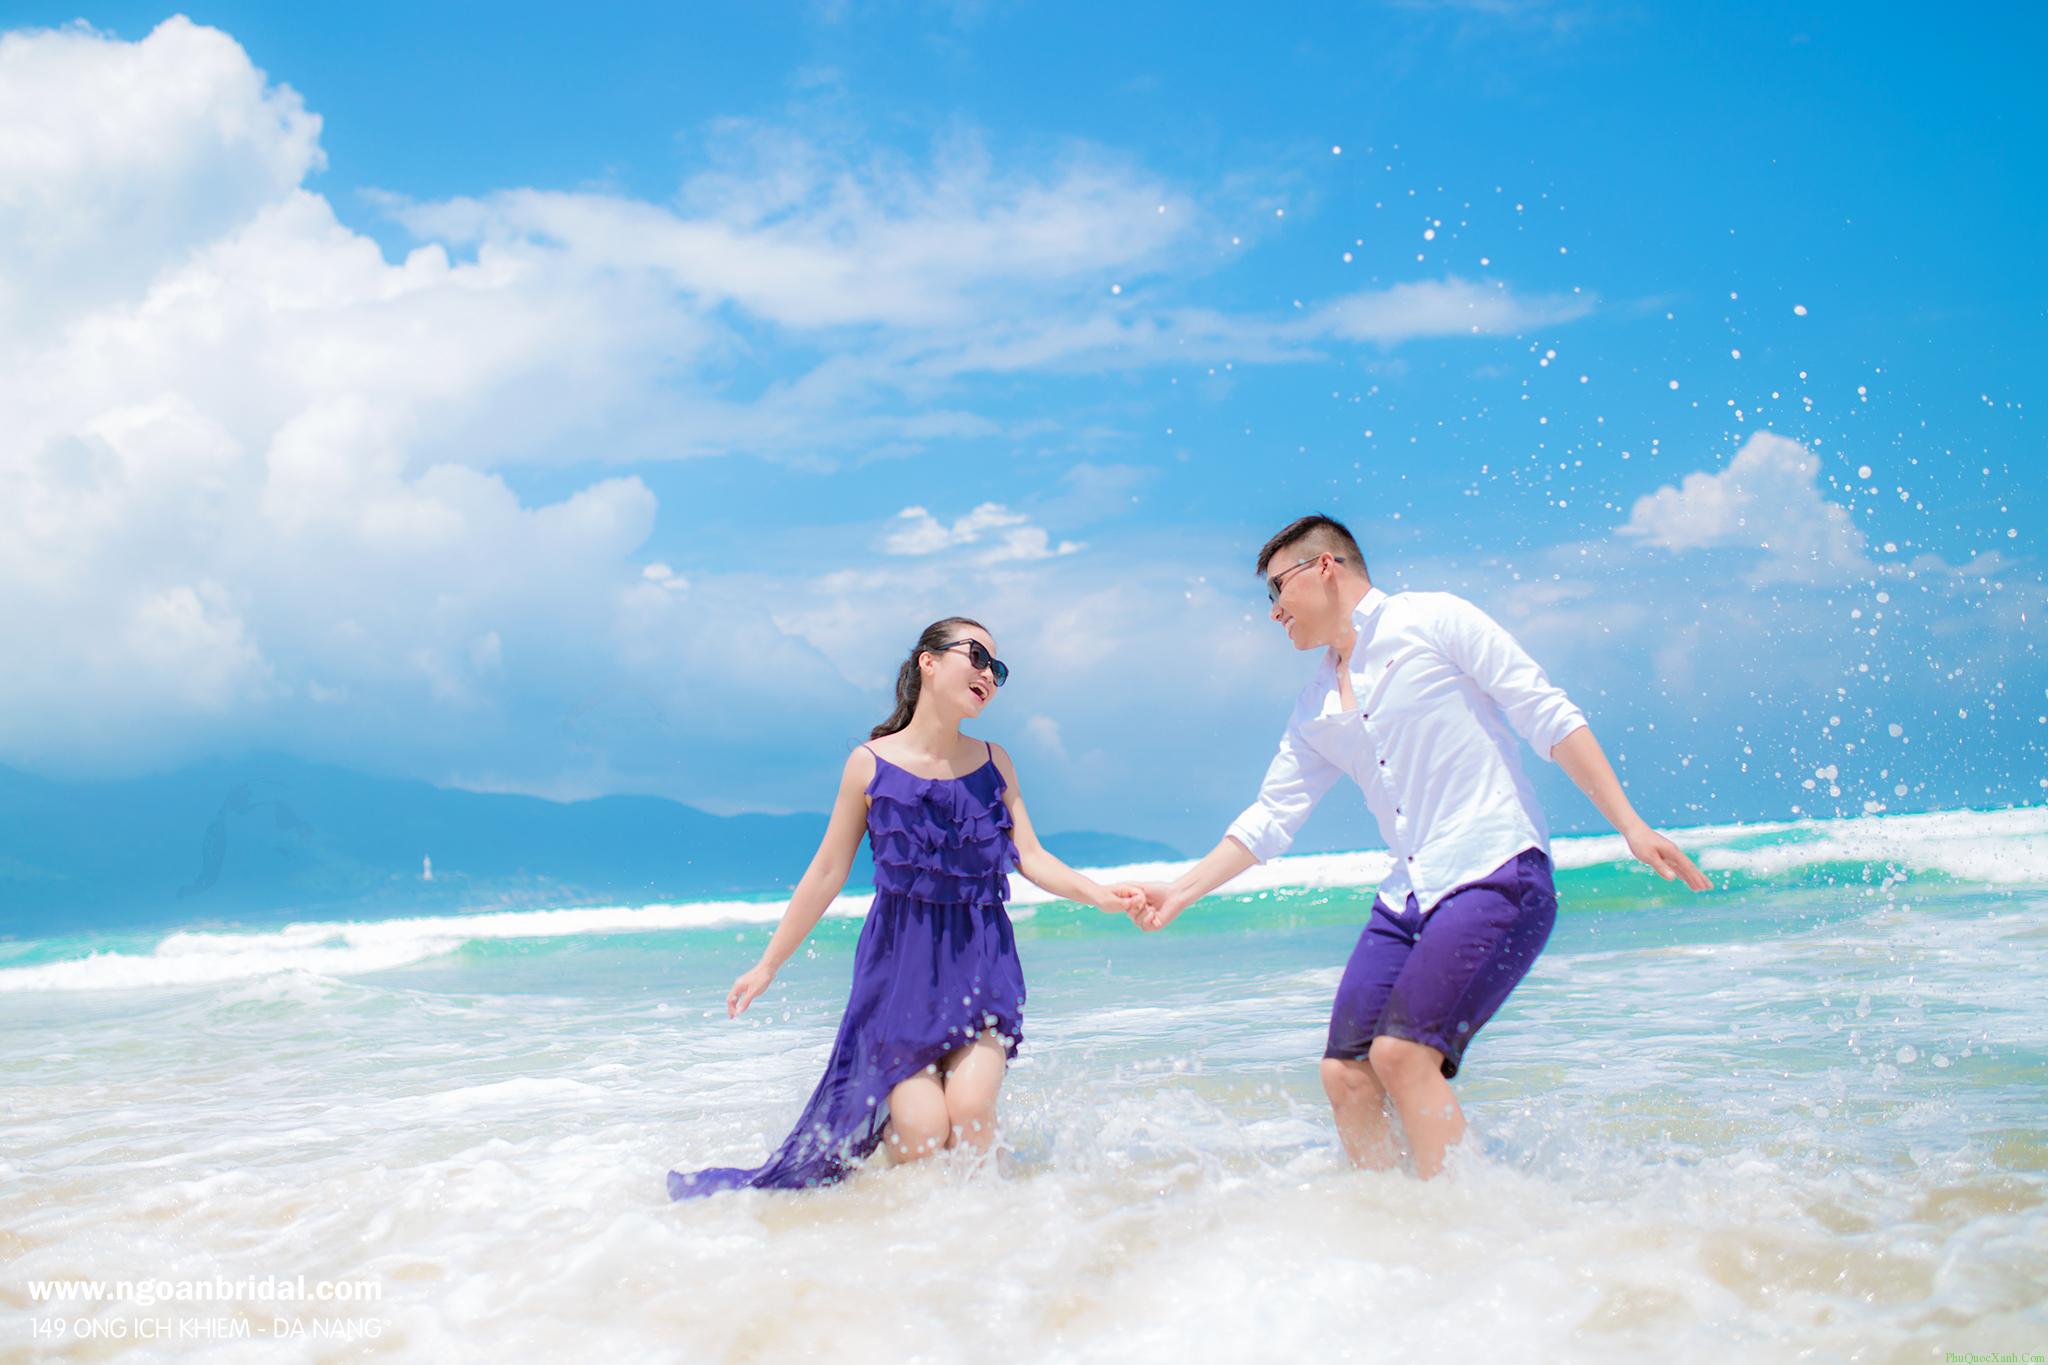 Chia sẻ 2022 về trải nghiệm chụp ảnh cưới ở Phú Quốc sẽ là món quà hữu ích cho các cặp đôi sắp cưới. Bạn sẽ nhận được những lời khuyên và hướng dẫn tuyệt vời từ các nhiếp ảnh gia kinh nghiệm và khám phá những điểm đến độc đáo để có thể chuẩn bị tốt nhất cho kế hoạch của mình.